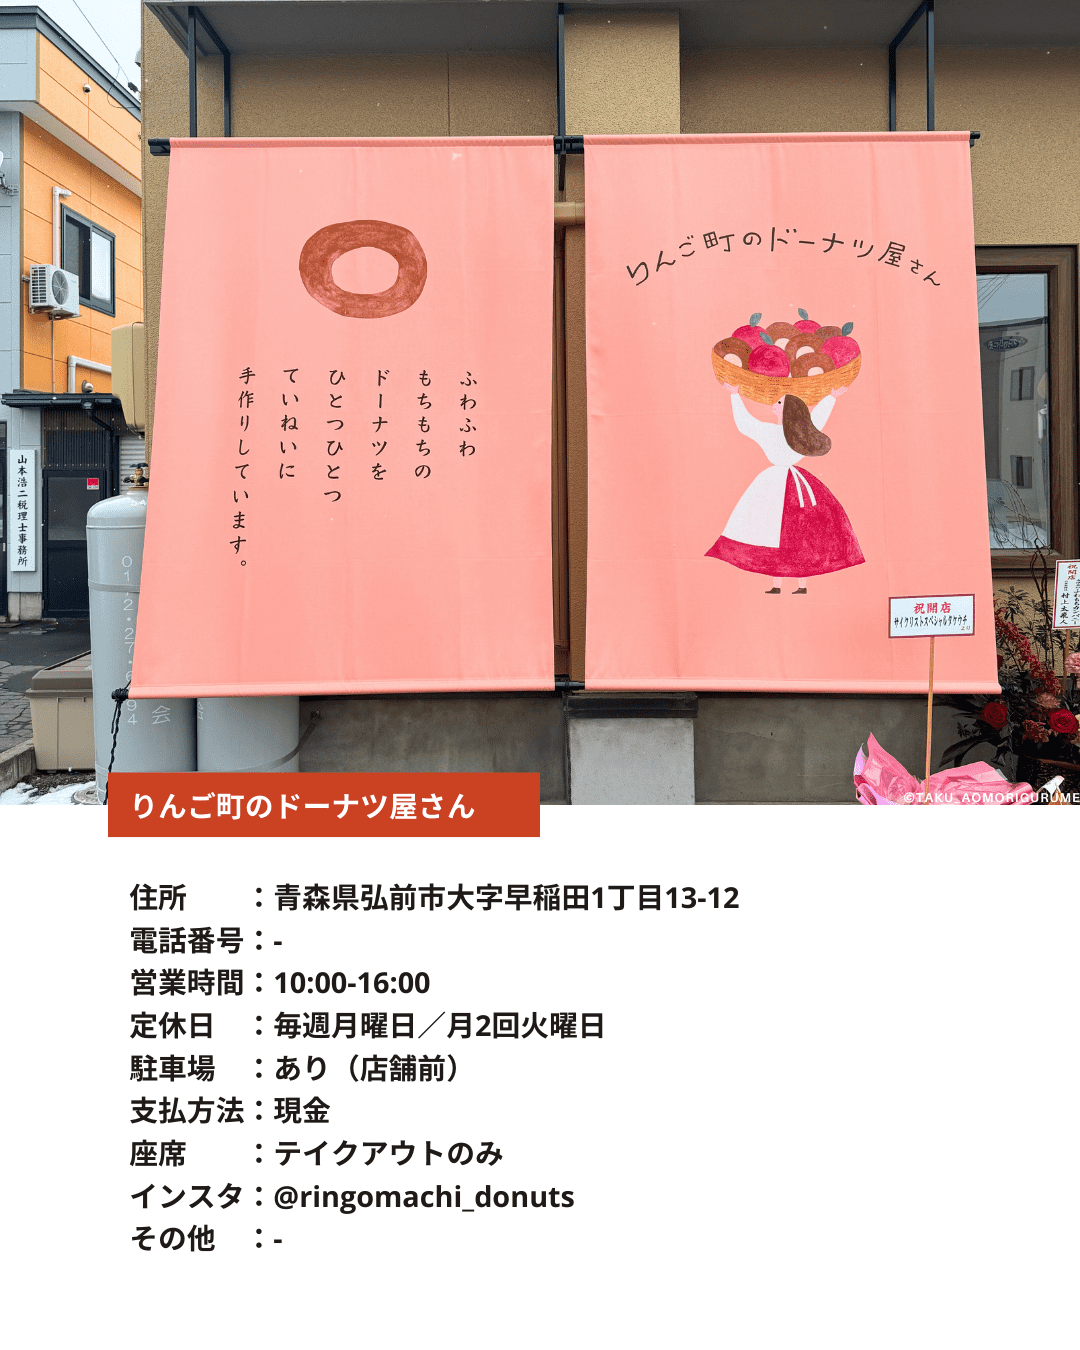 青森県にある「りんご町のドーナツ屋さん」の「外観と店舗情報」